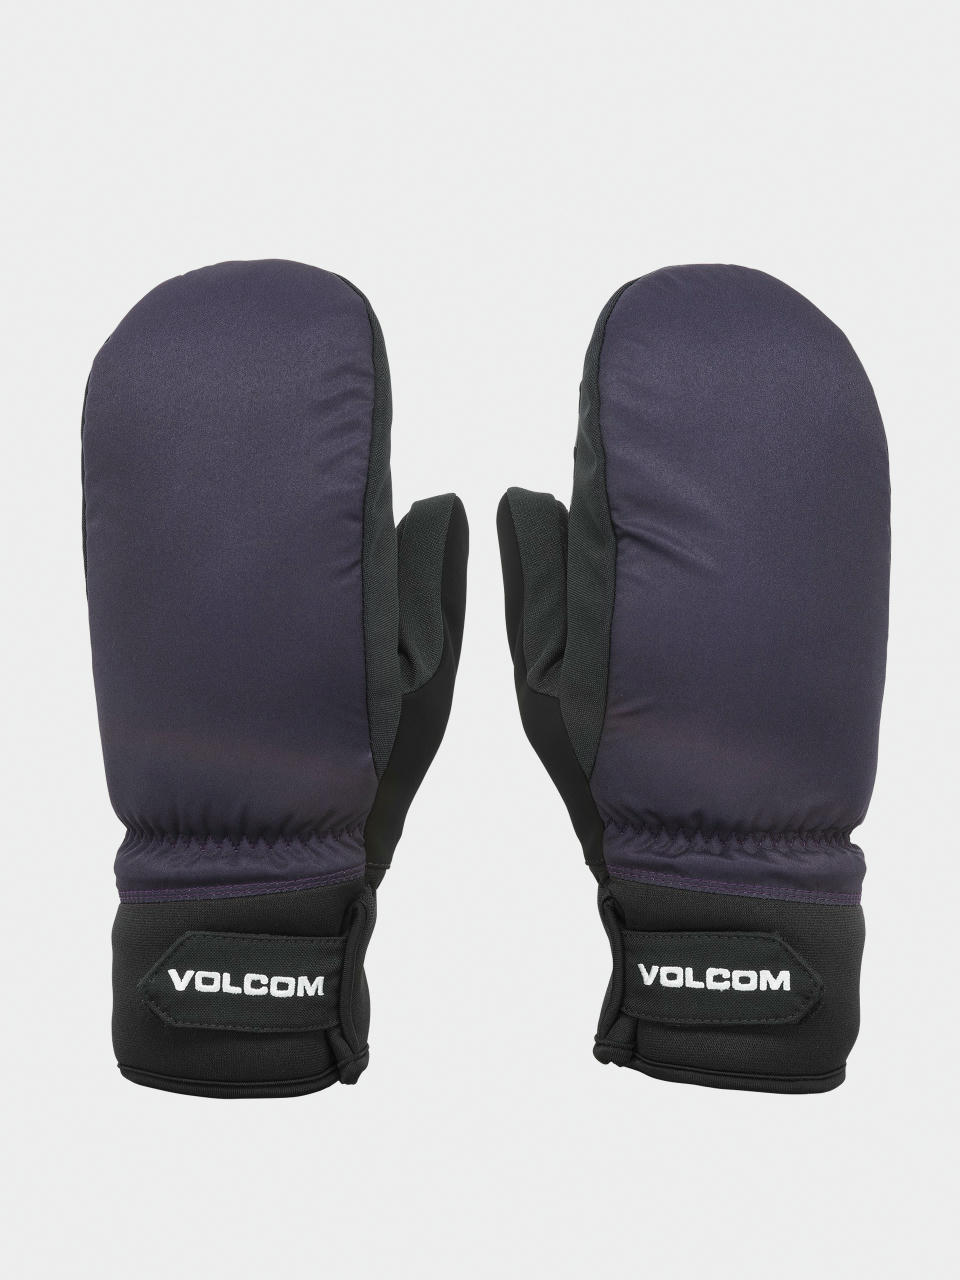 Volcom V.Co Nyle Mitt Handschuhe (purple)